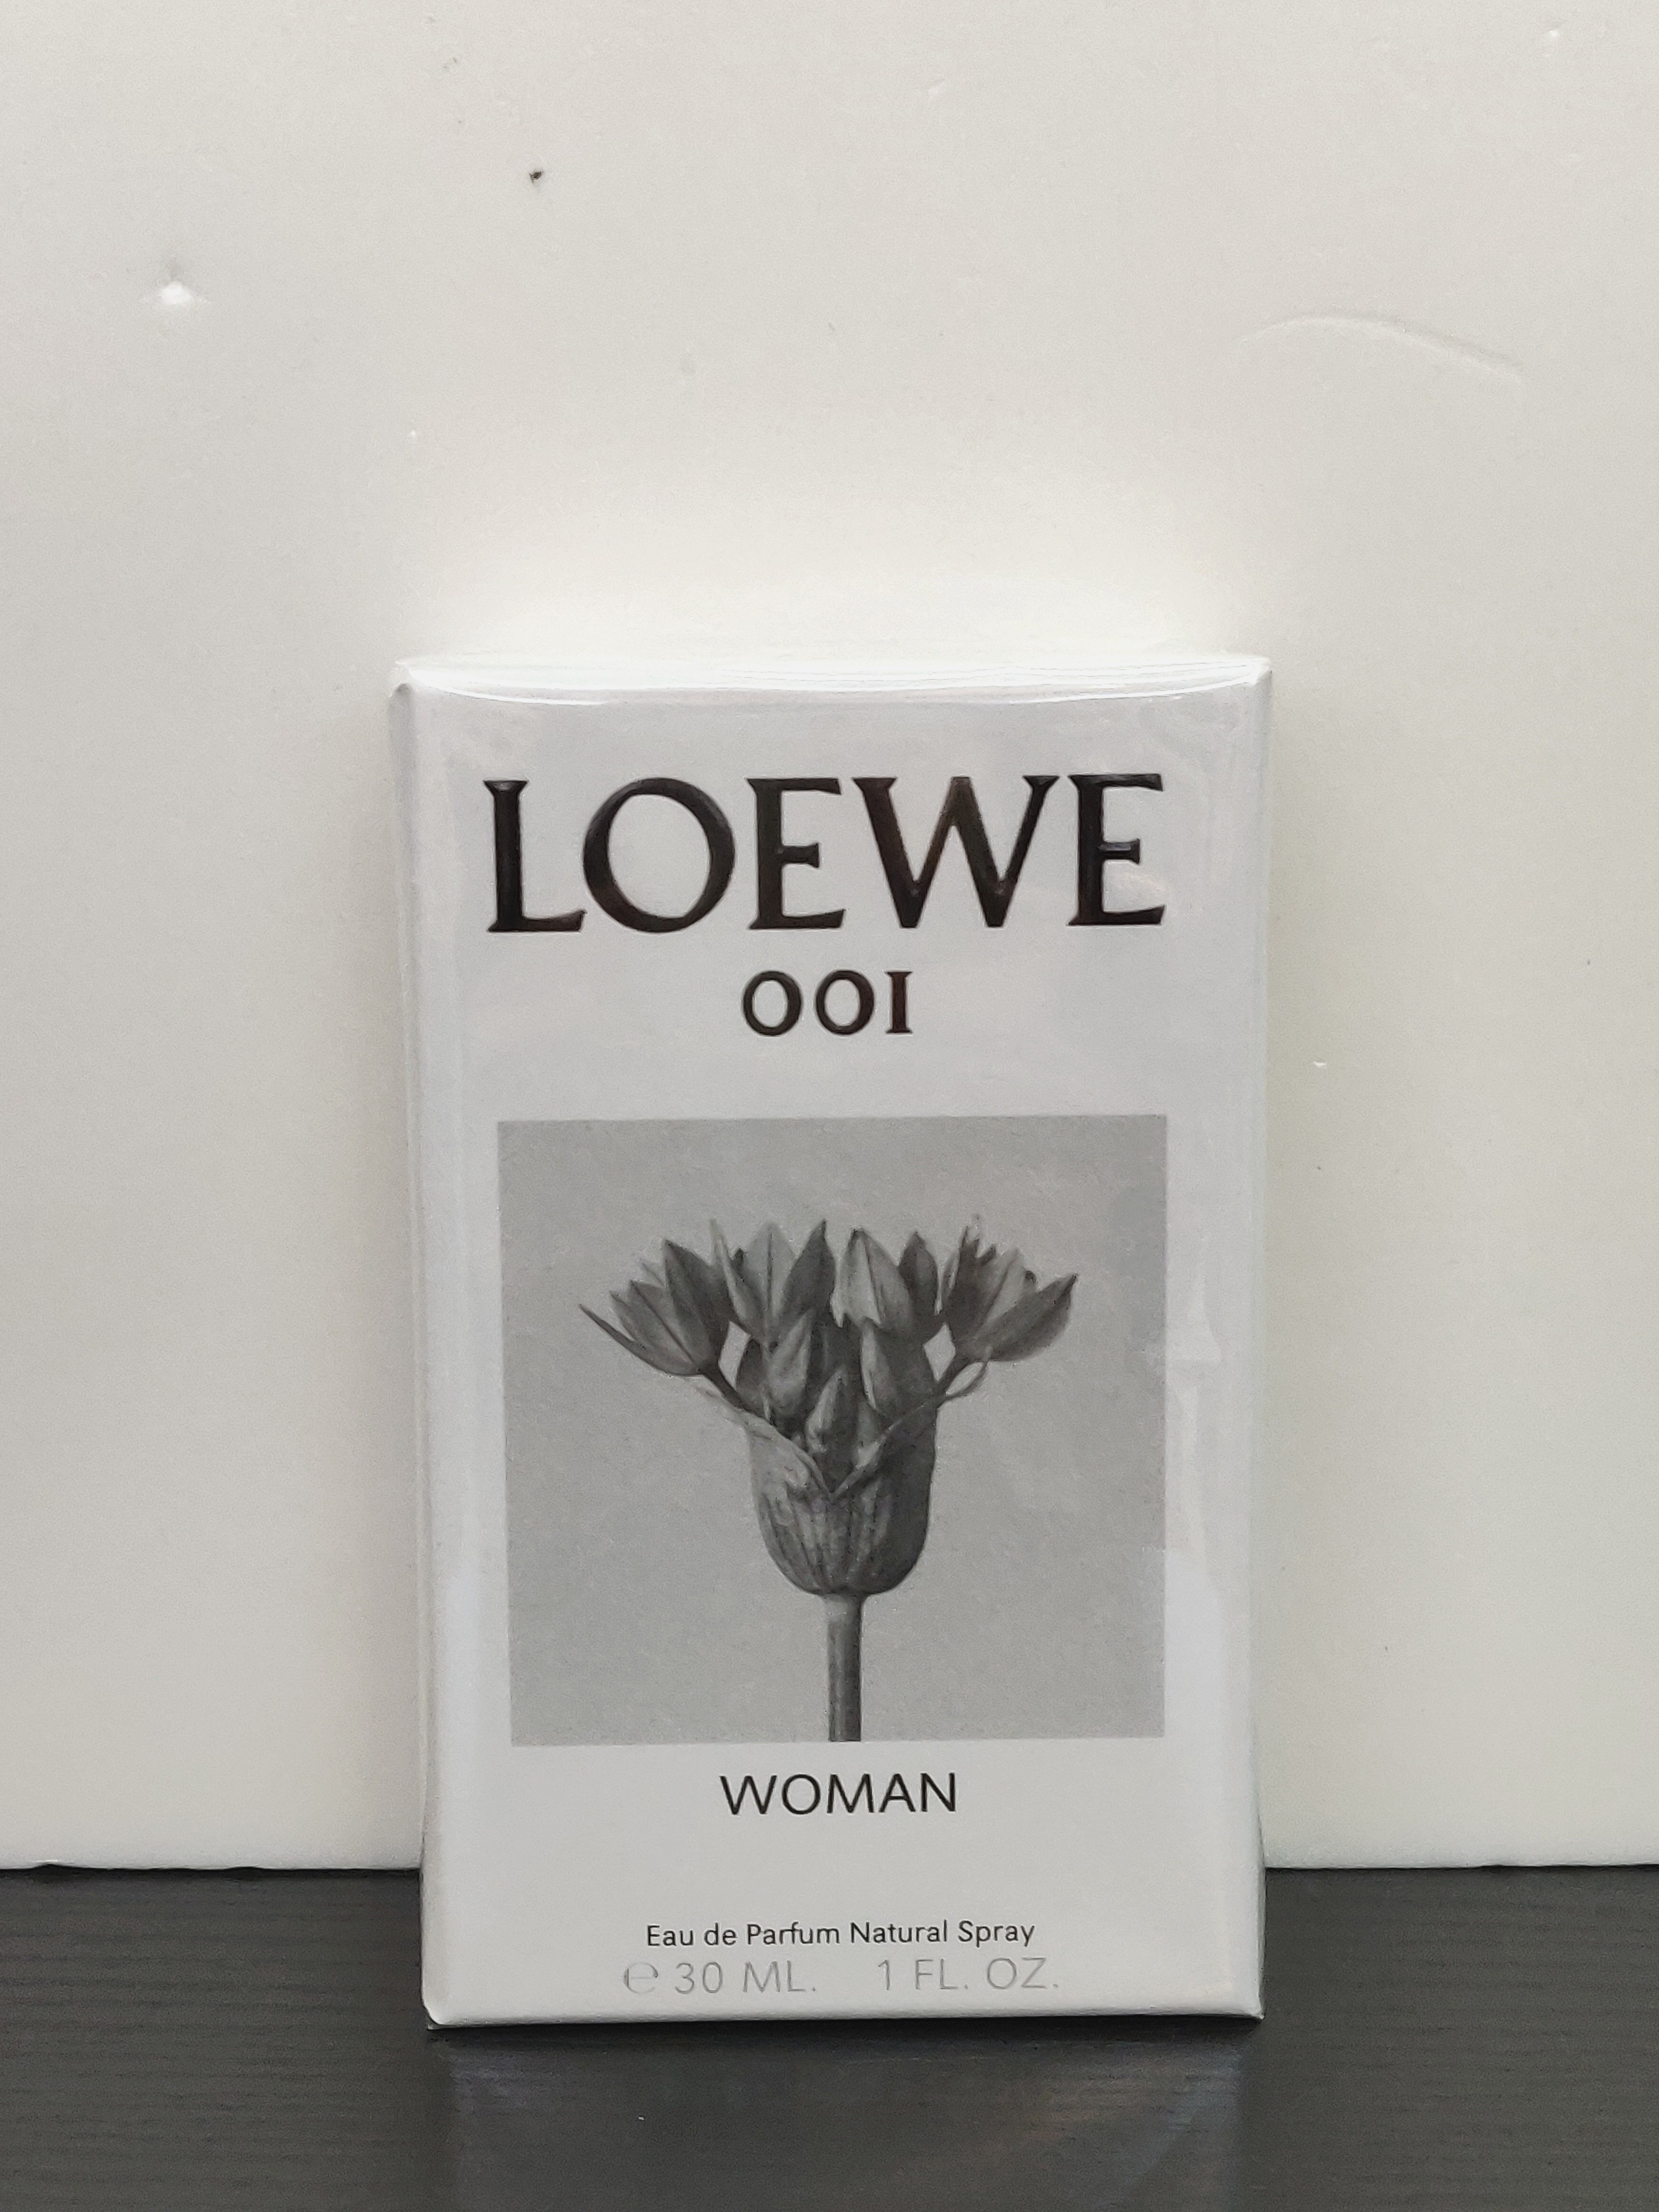 loewe 001 30ml